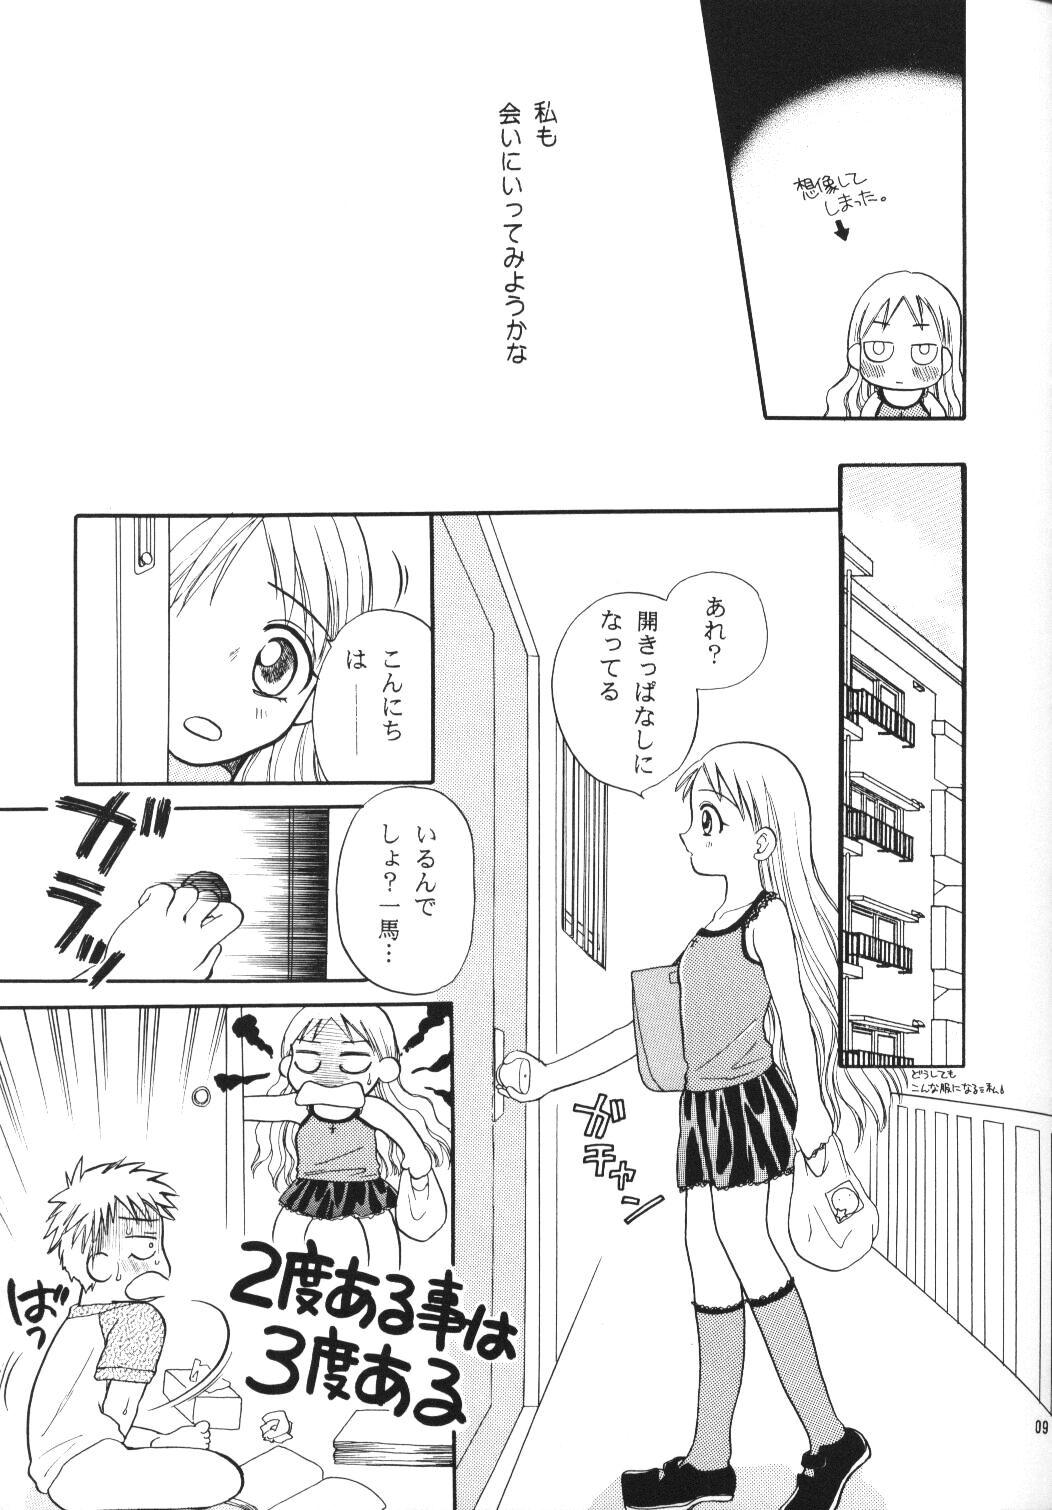 Sucking Dick Tenshi no Girigiri - Kare kano Interacial - Page 8